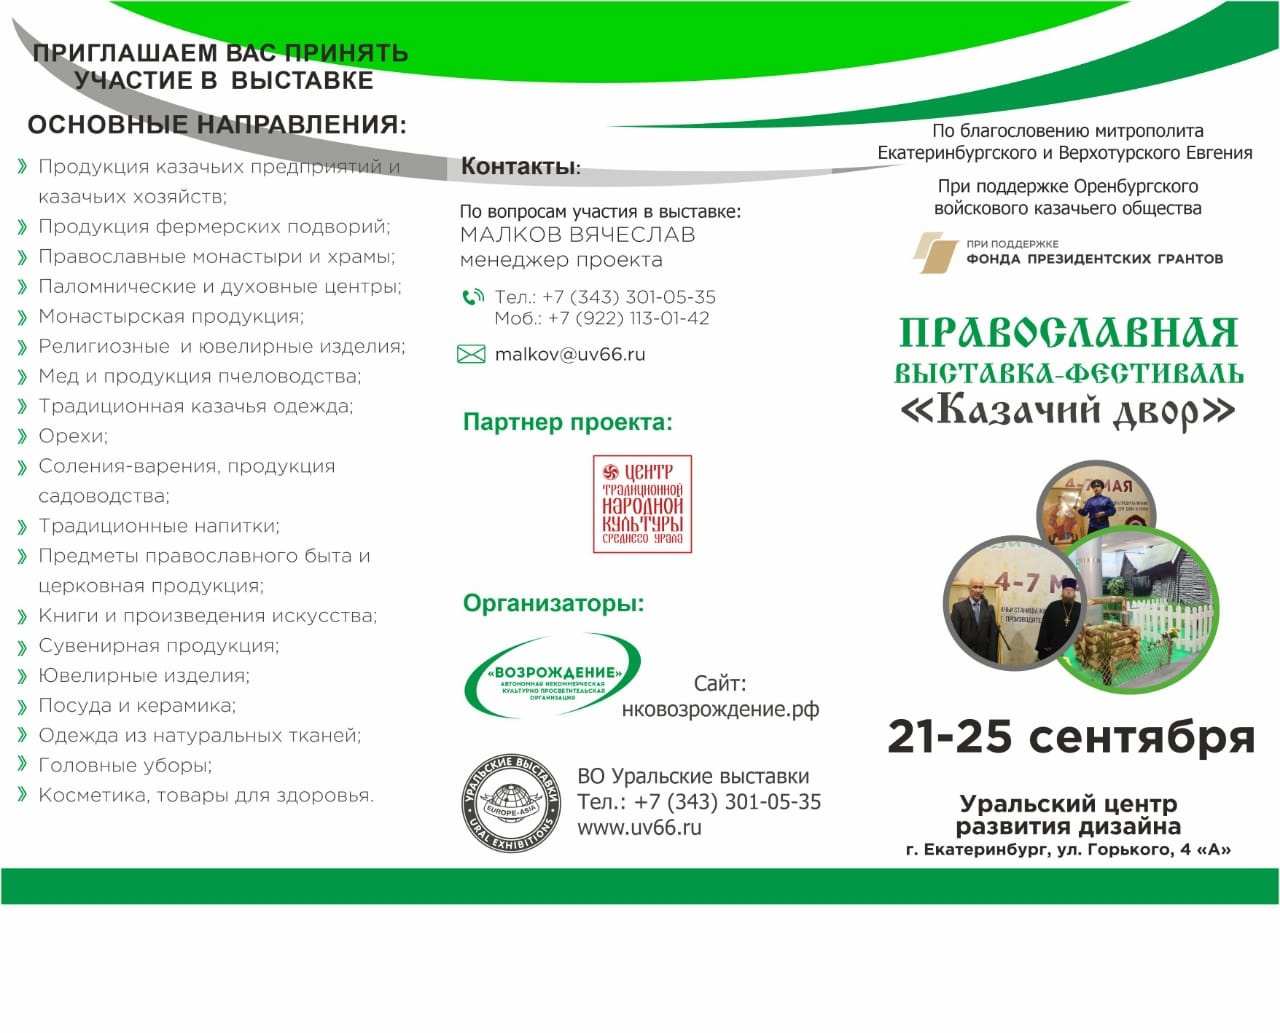 В Екатеринбурге пройдет православная выставка «Казачий двор»